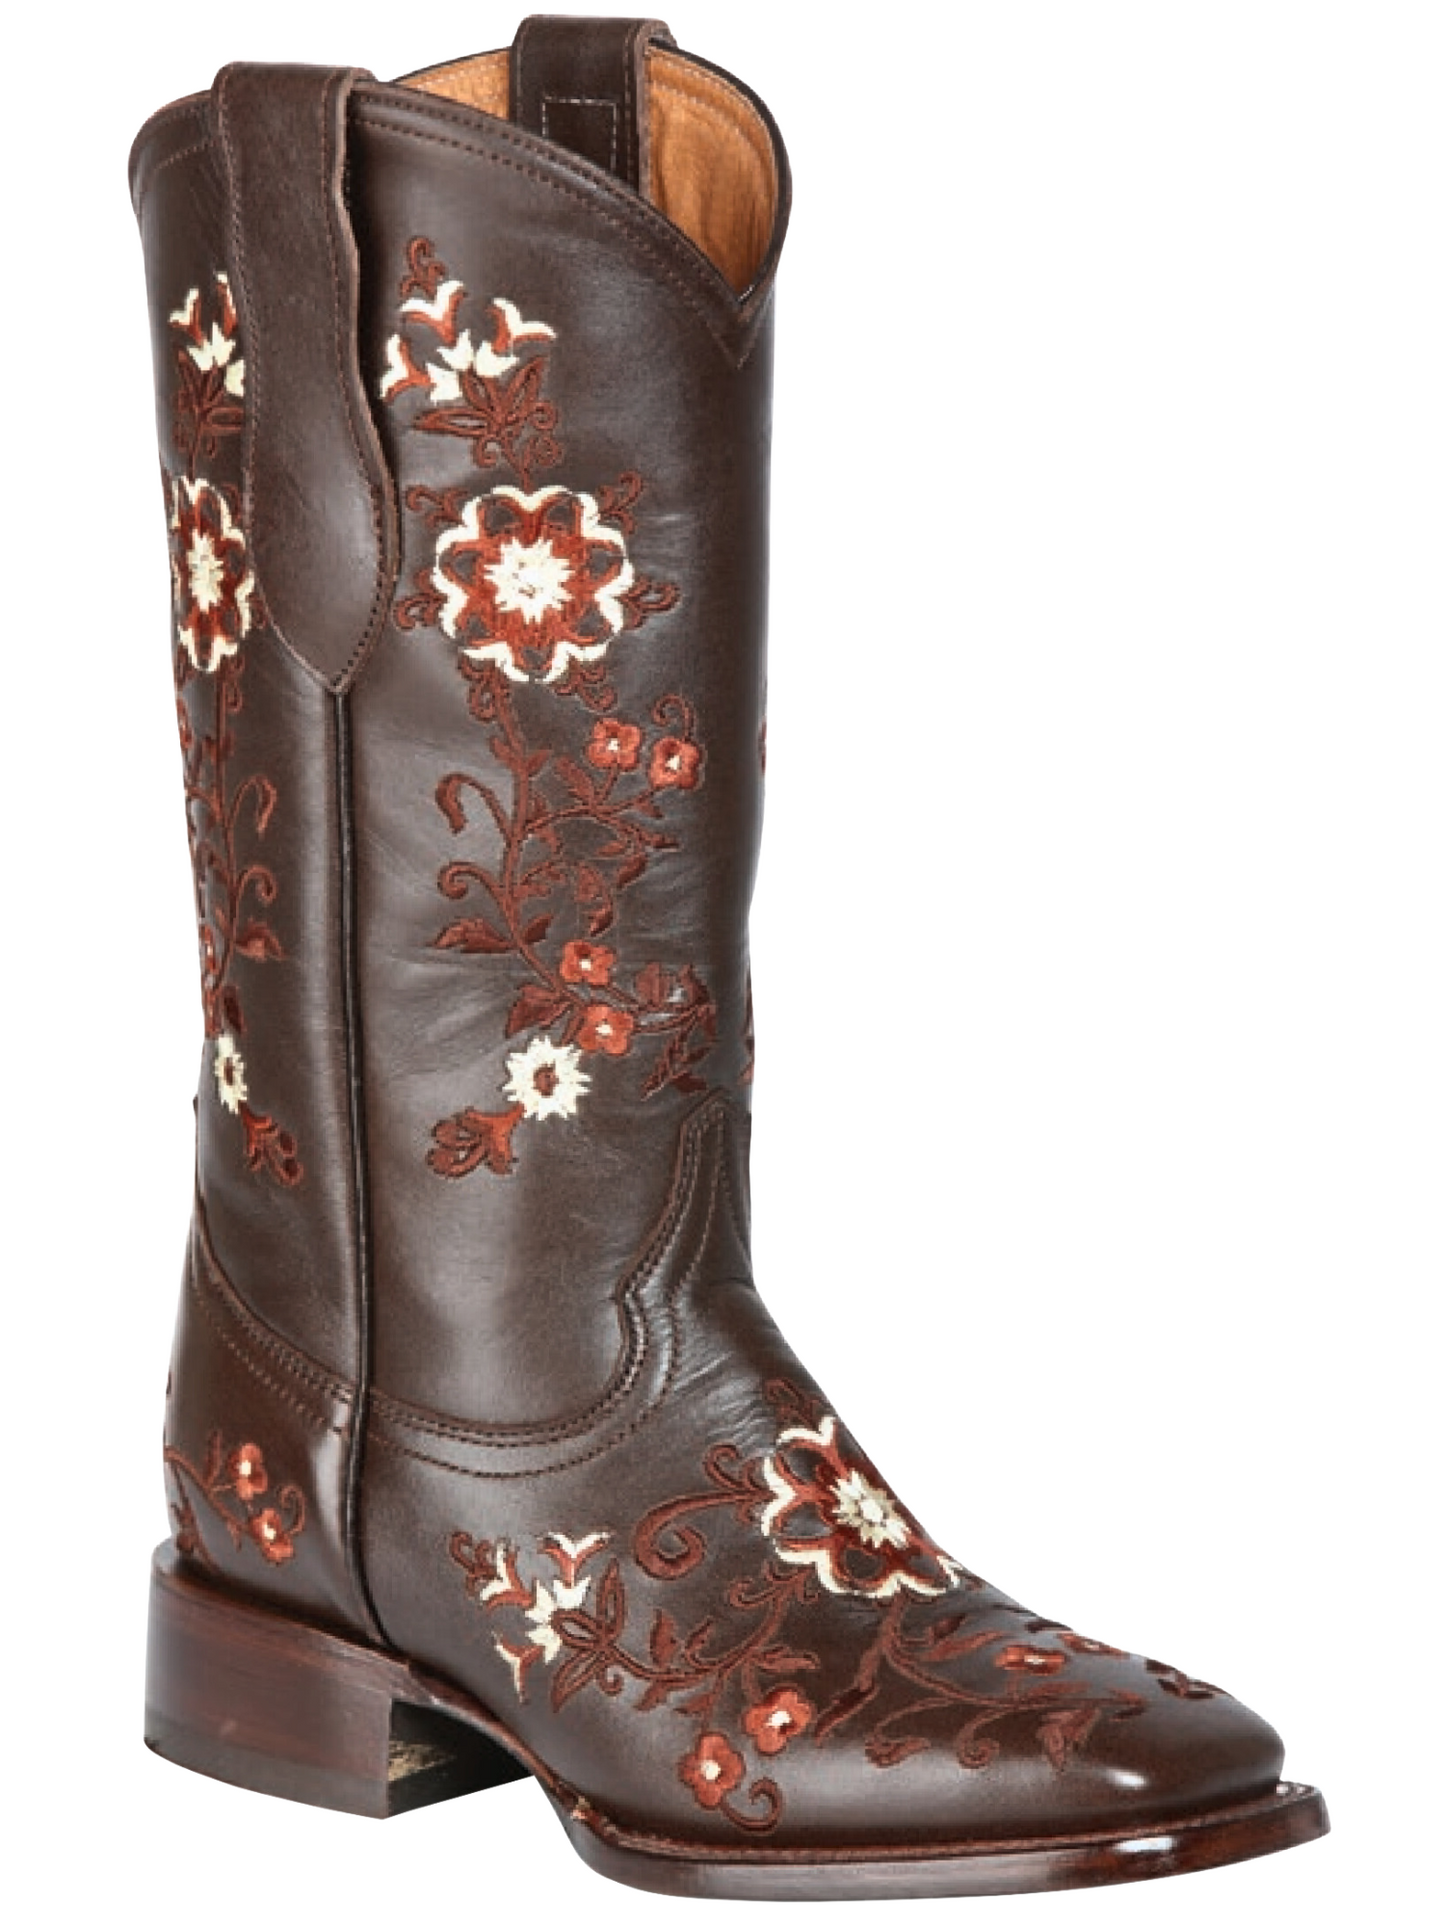 Botas Vaqueras Rodeo con Bordado de Flores de Piel Genuina para Mujer 'Jar Boots' - ID: 126444 Cowgirl Boots Jar Boots 